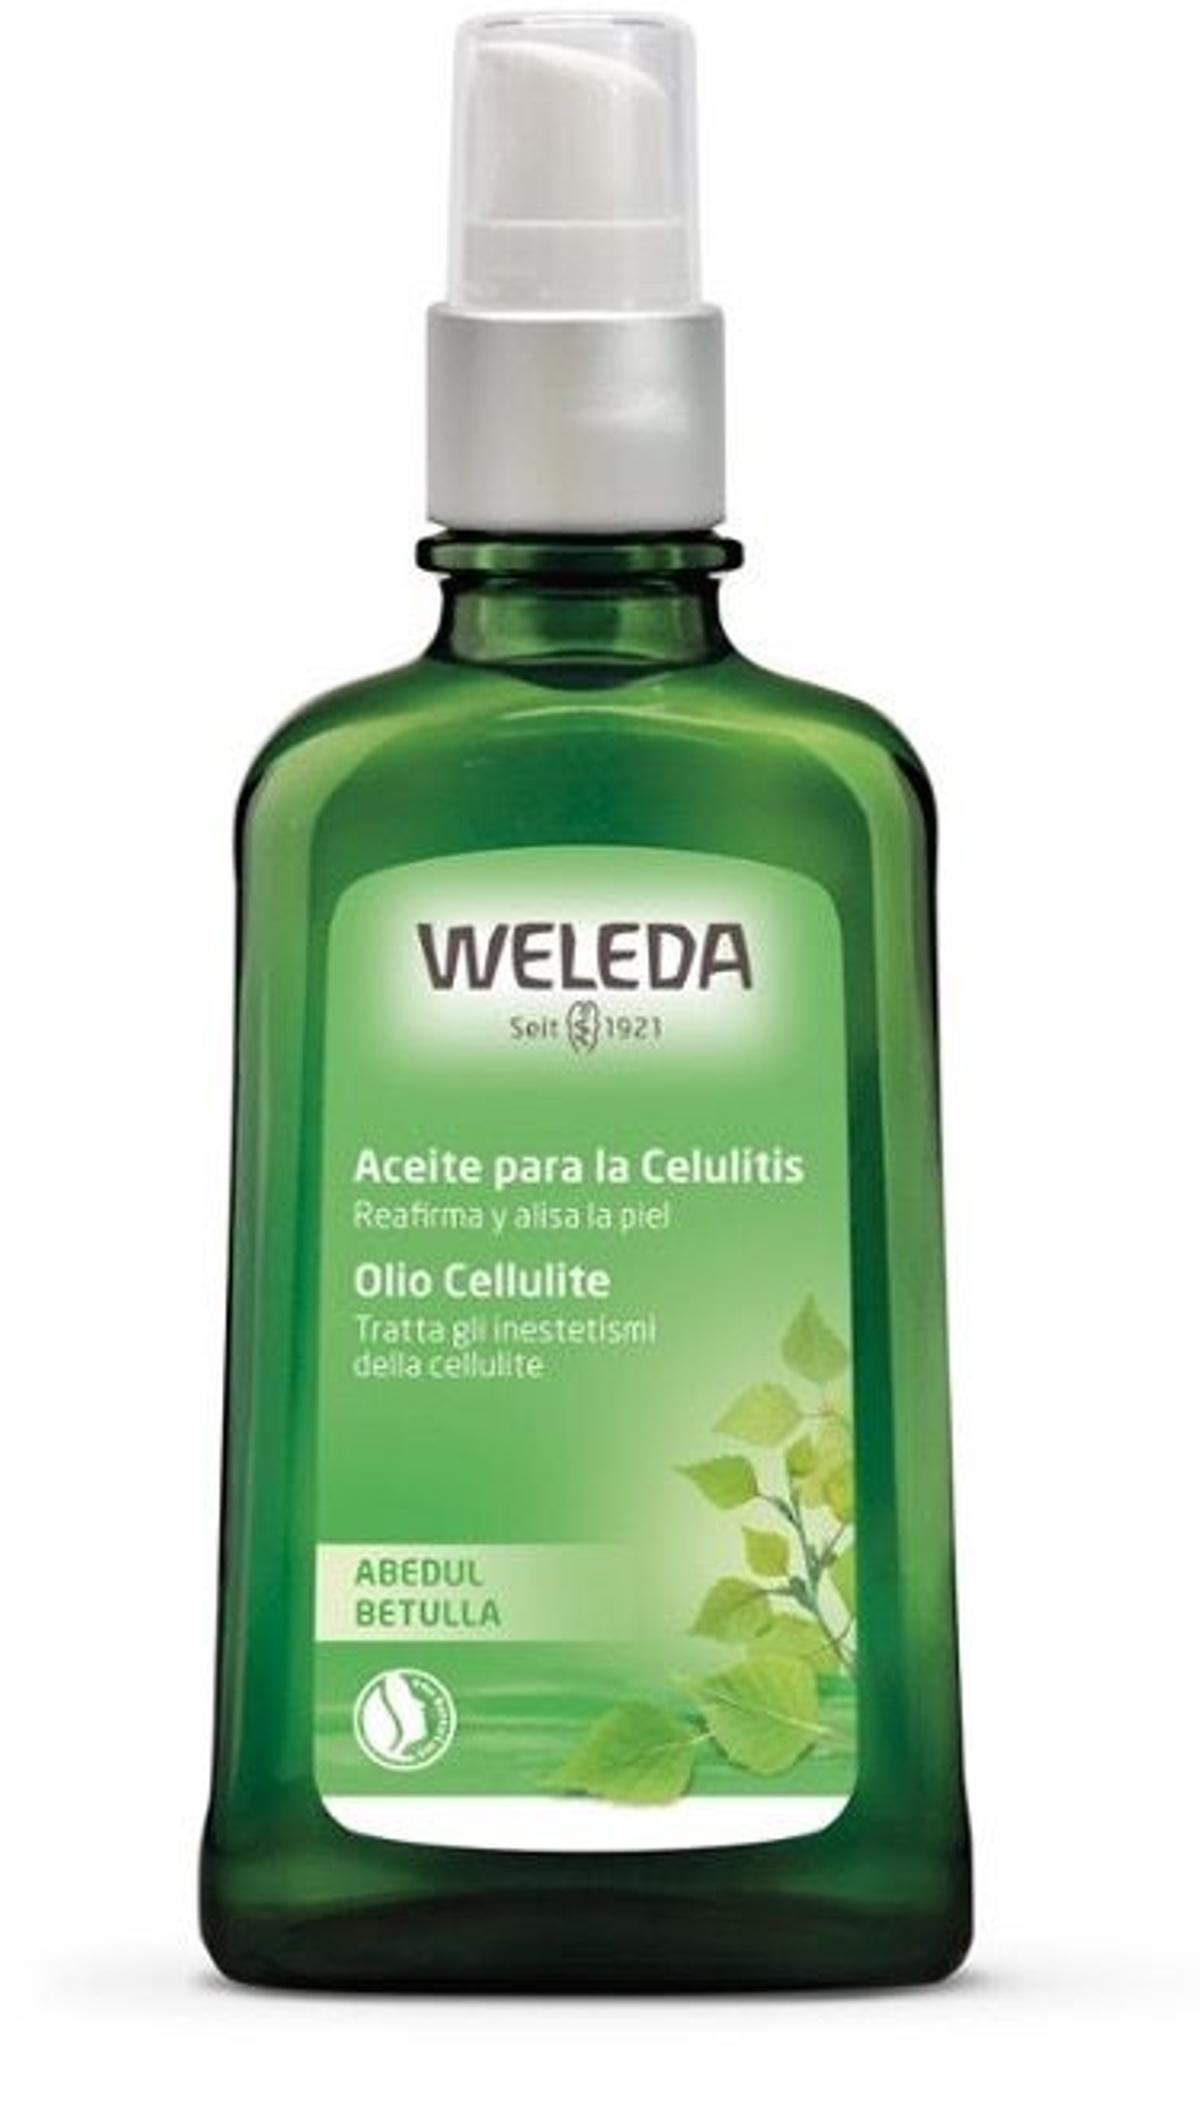 Aceite de Abedul para la celulitis, de Weleda